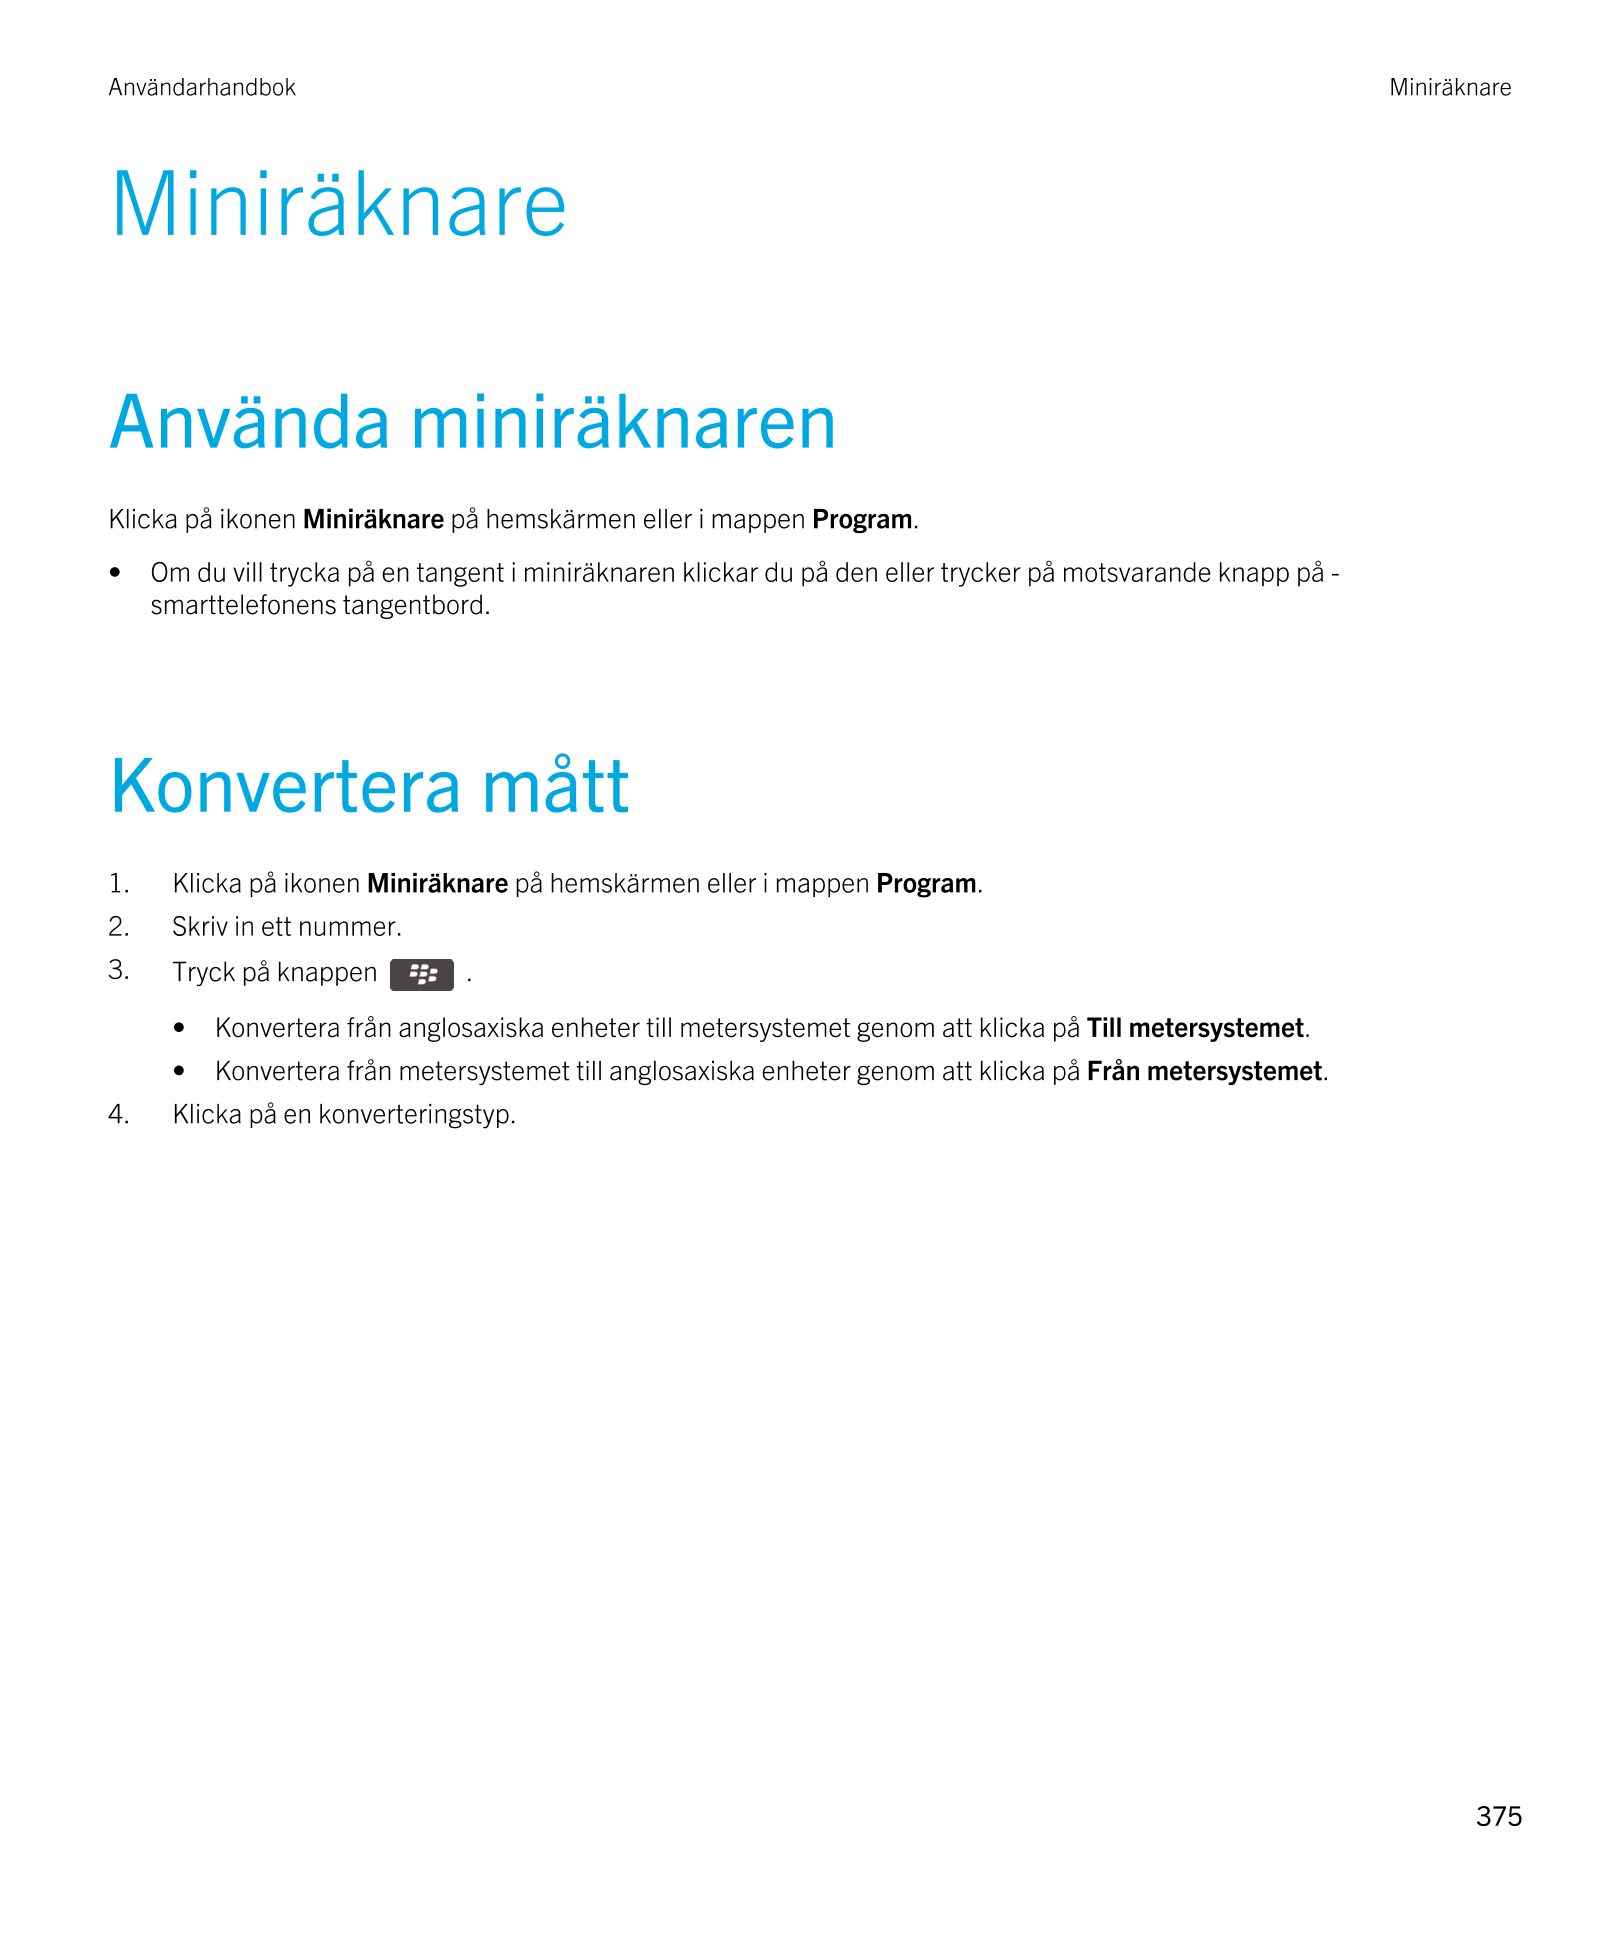 Användarhandbok Miniräknare
Miniräknare
Använda miniräknaren
Klicka på ikonen  Miniräknare på hemskärmen eller i mappen  Program